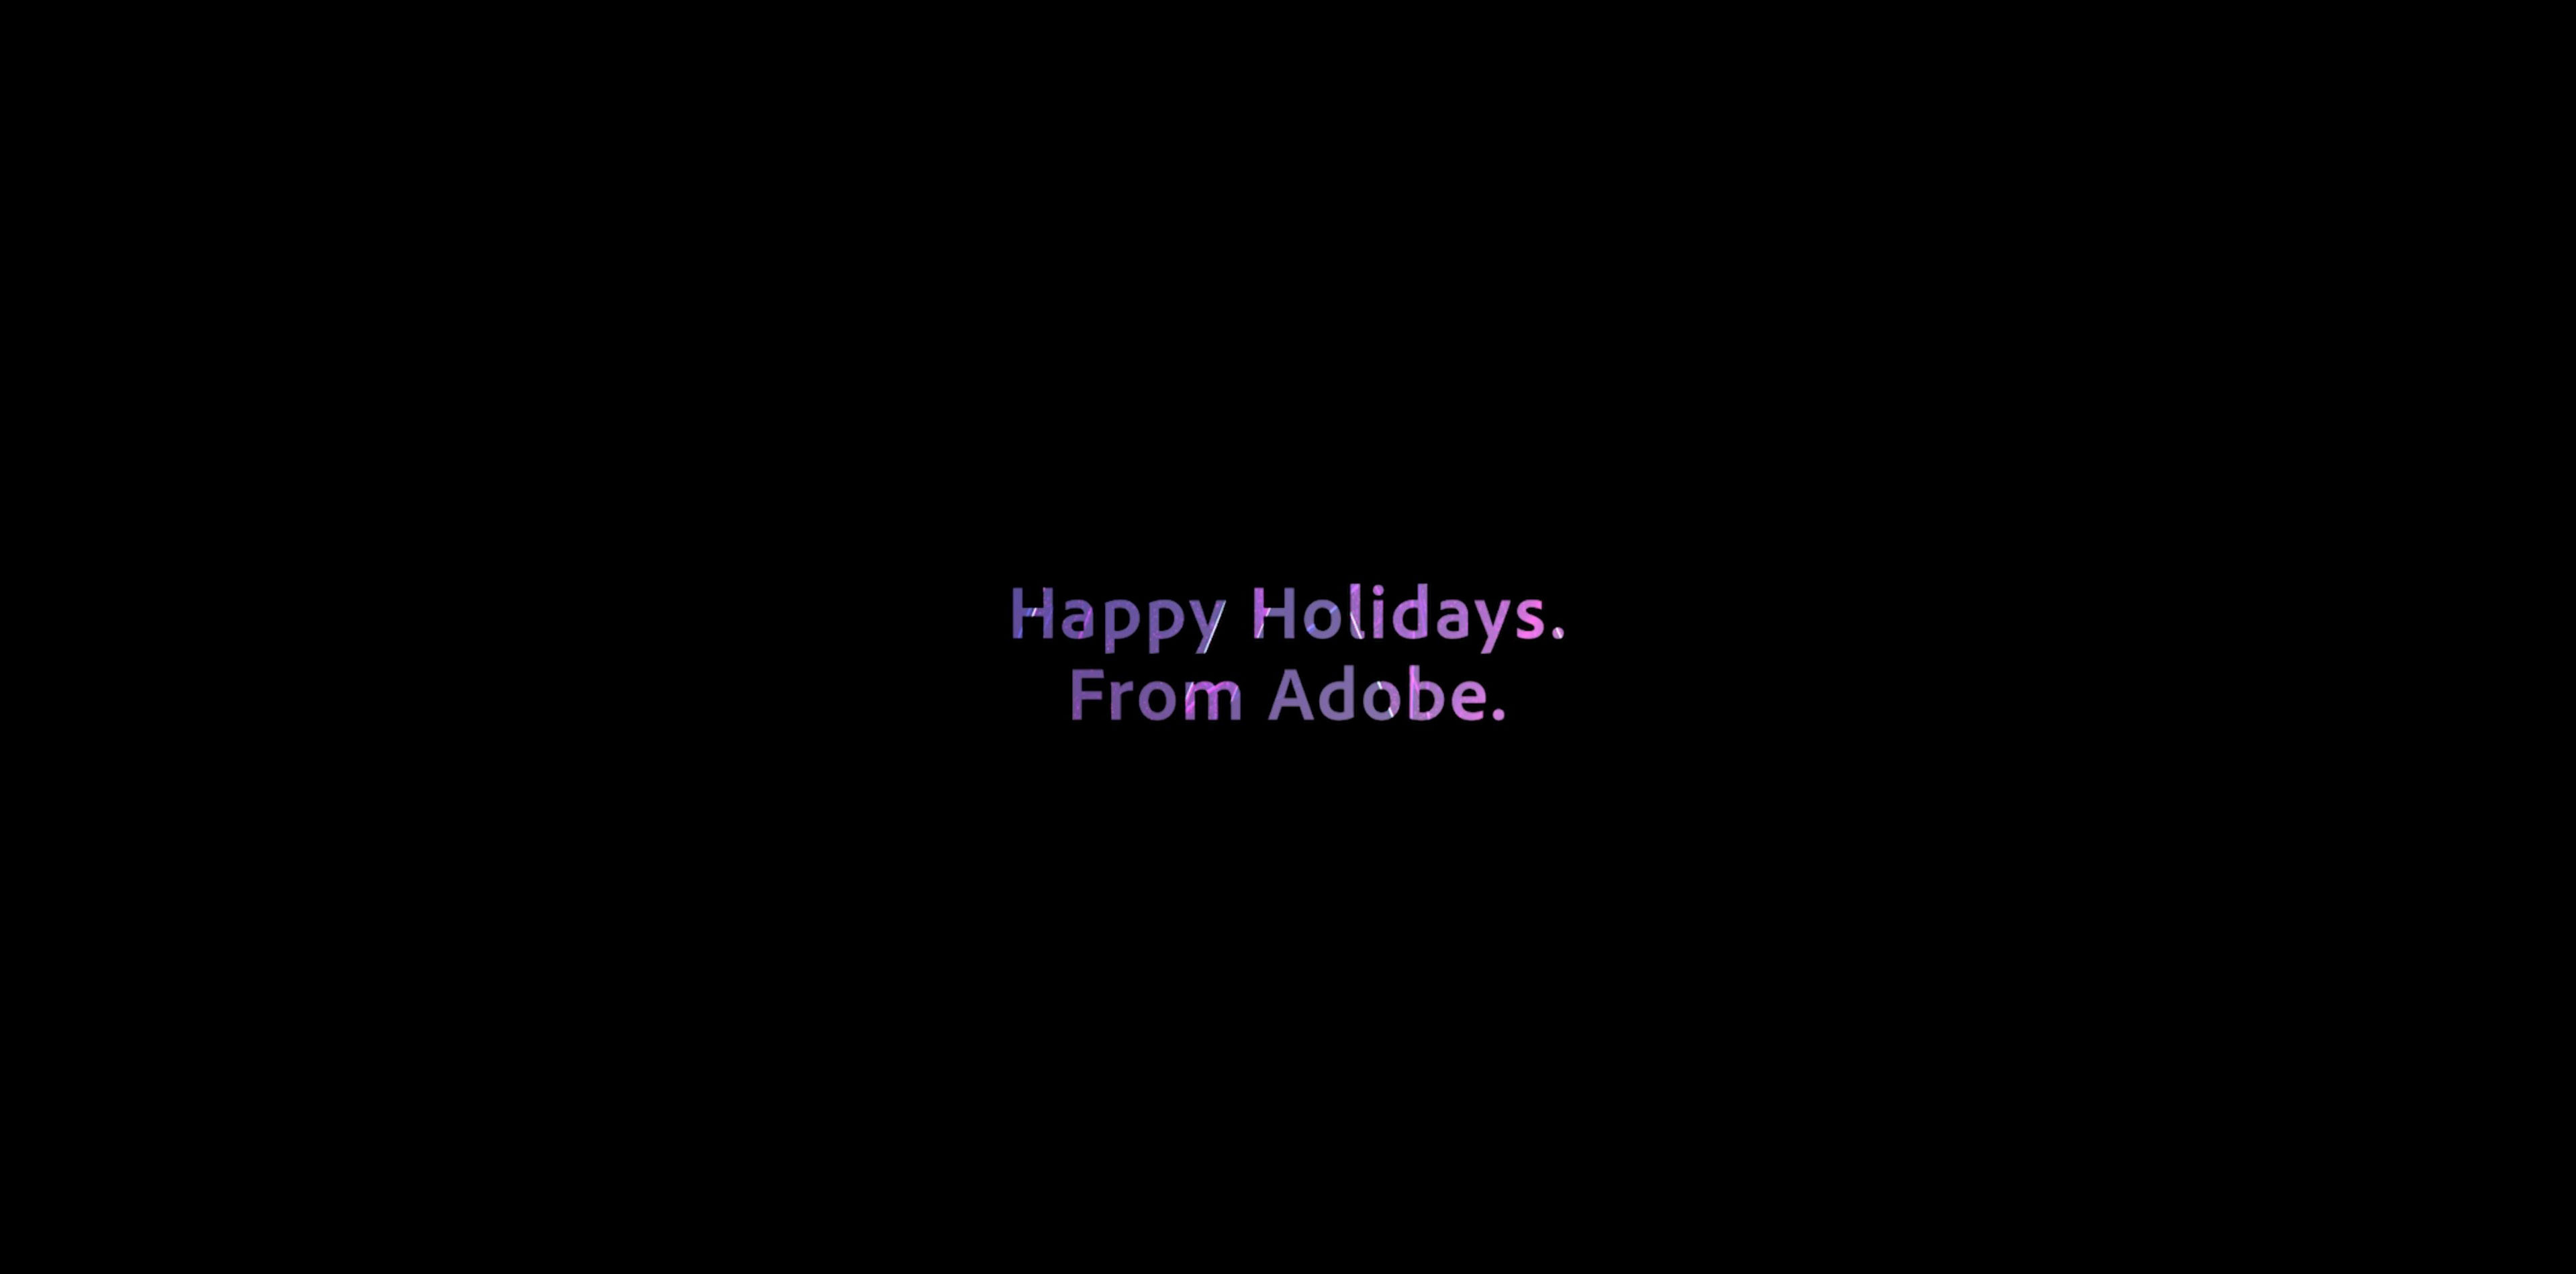 Adobe : Happy Holidays 2019